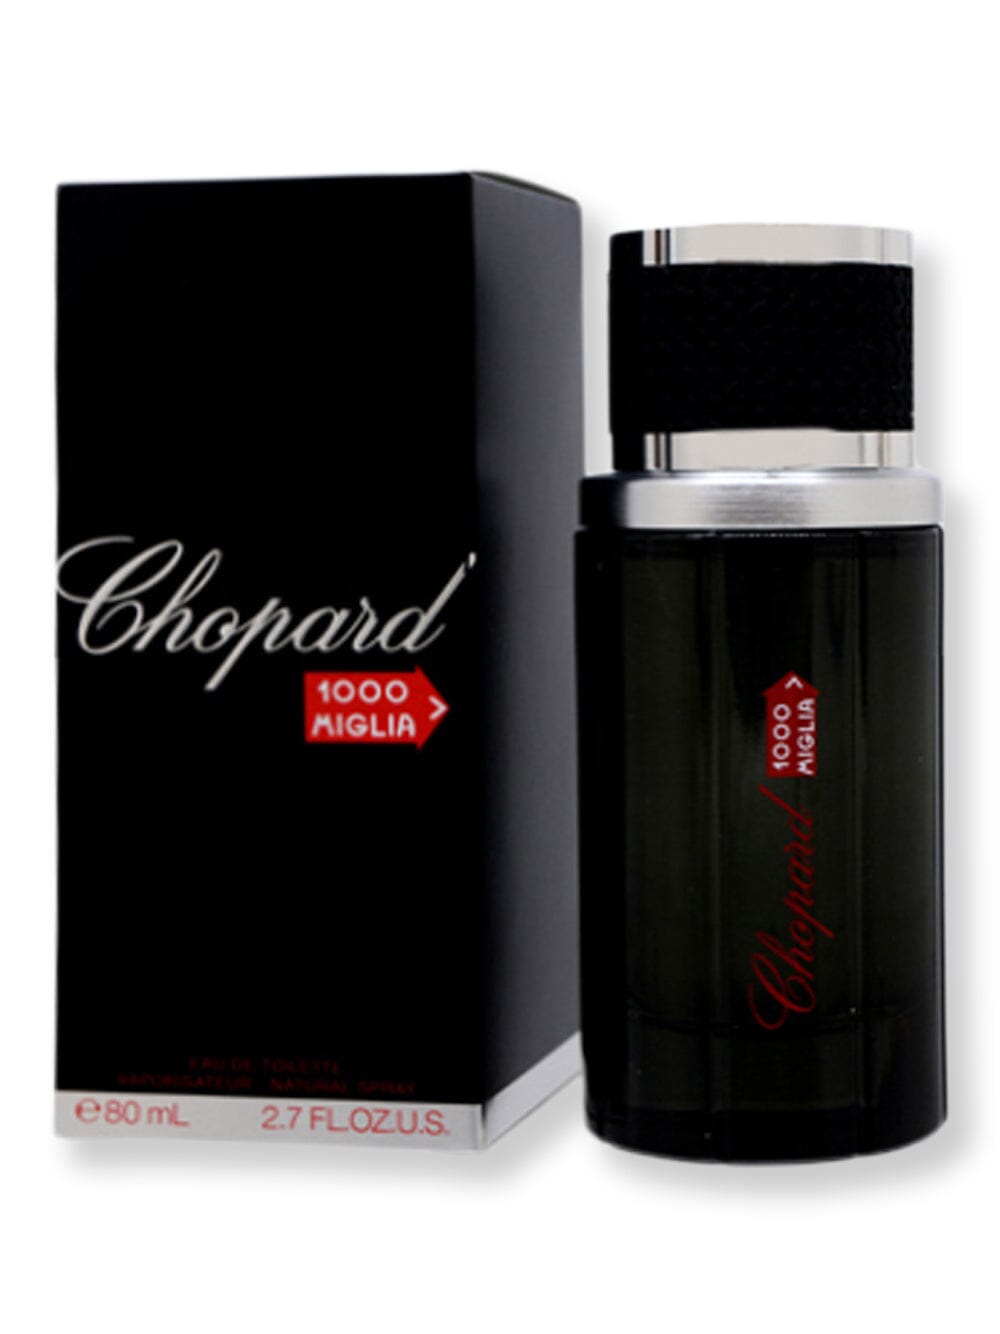 Chopard Chopard 1000 Miglia EDT Spray 2.8 oz80 ml Perfume 